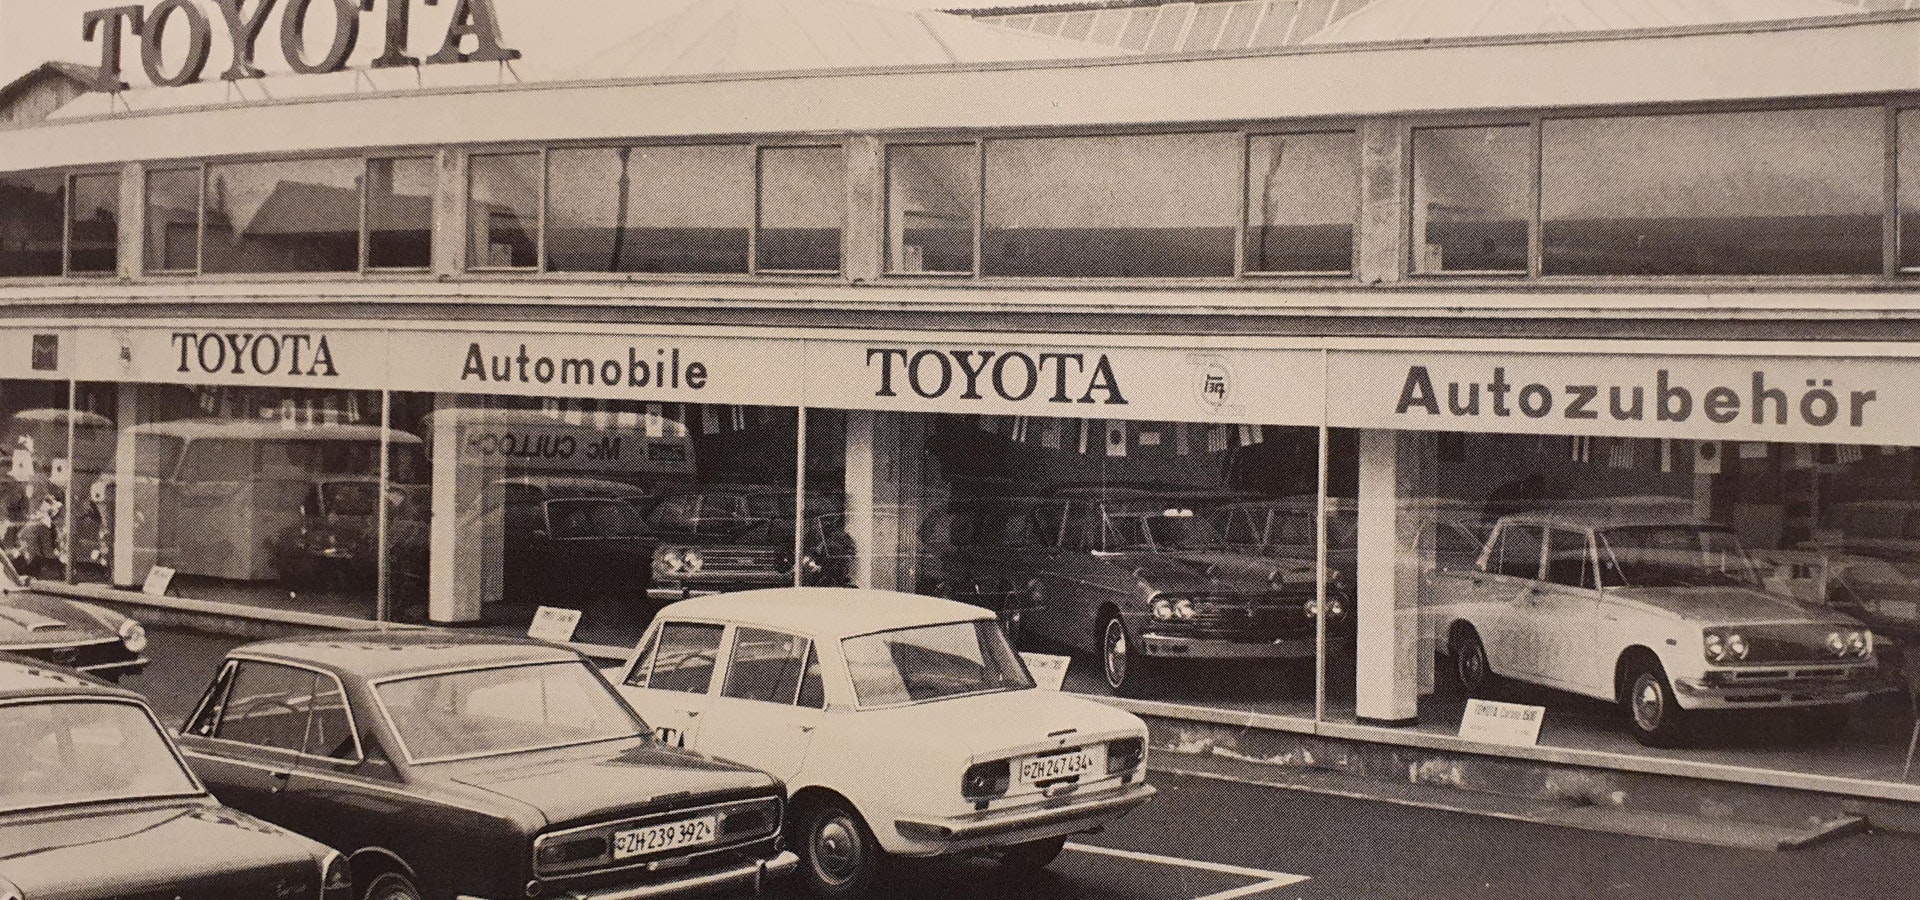 Alte Toyota Garage im Jahr 1974